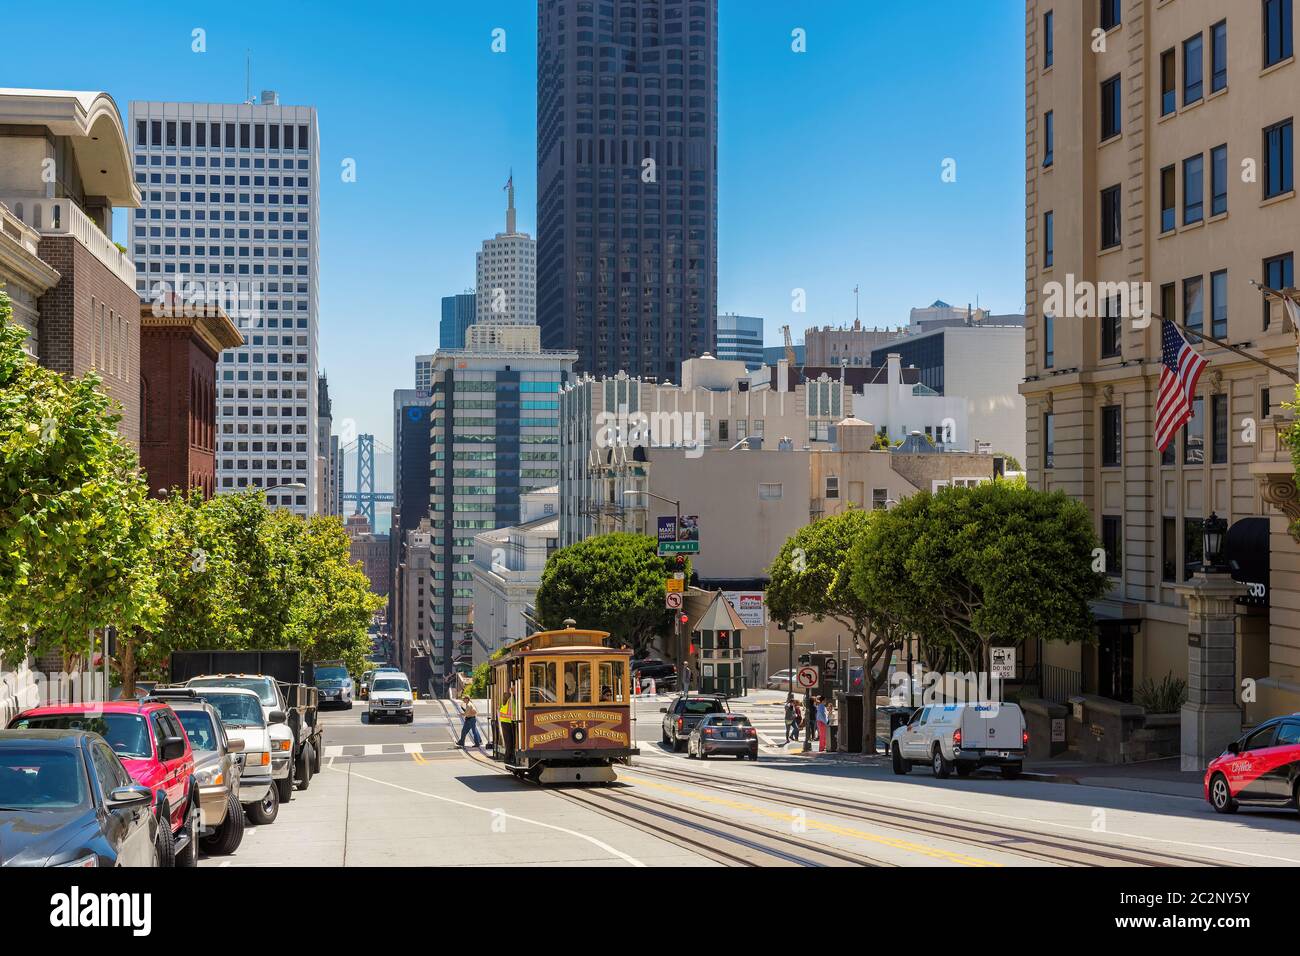 Téléphériques dans la rue San Francisco, Californie Banque D'Images